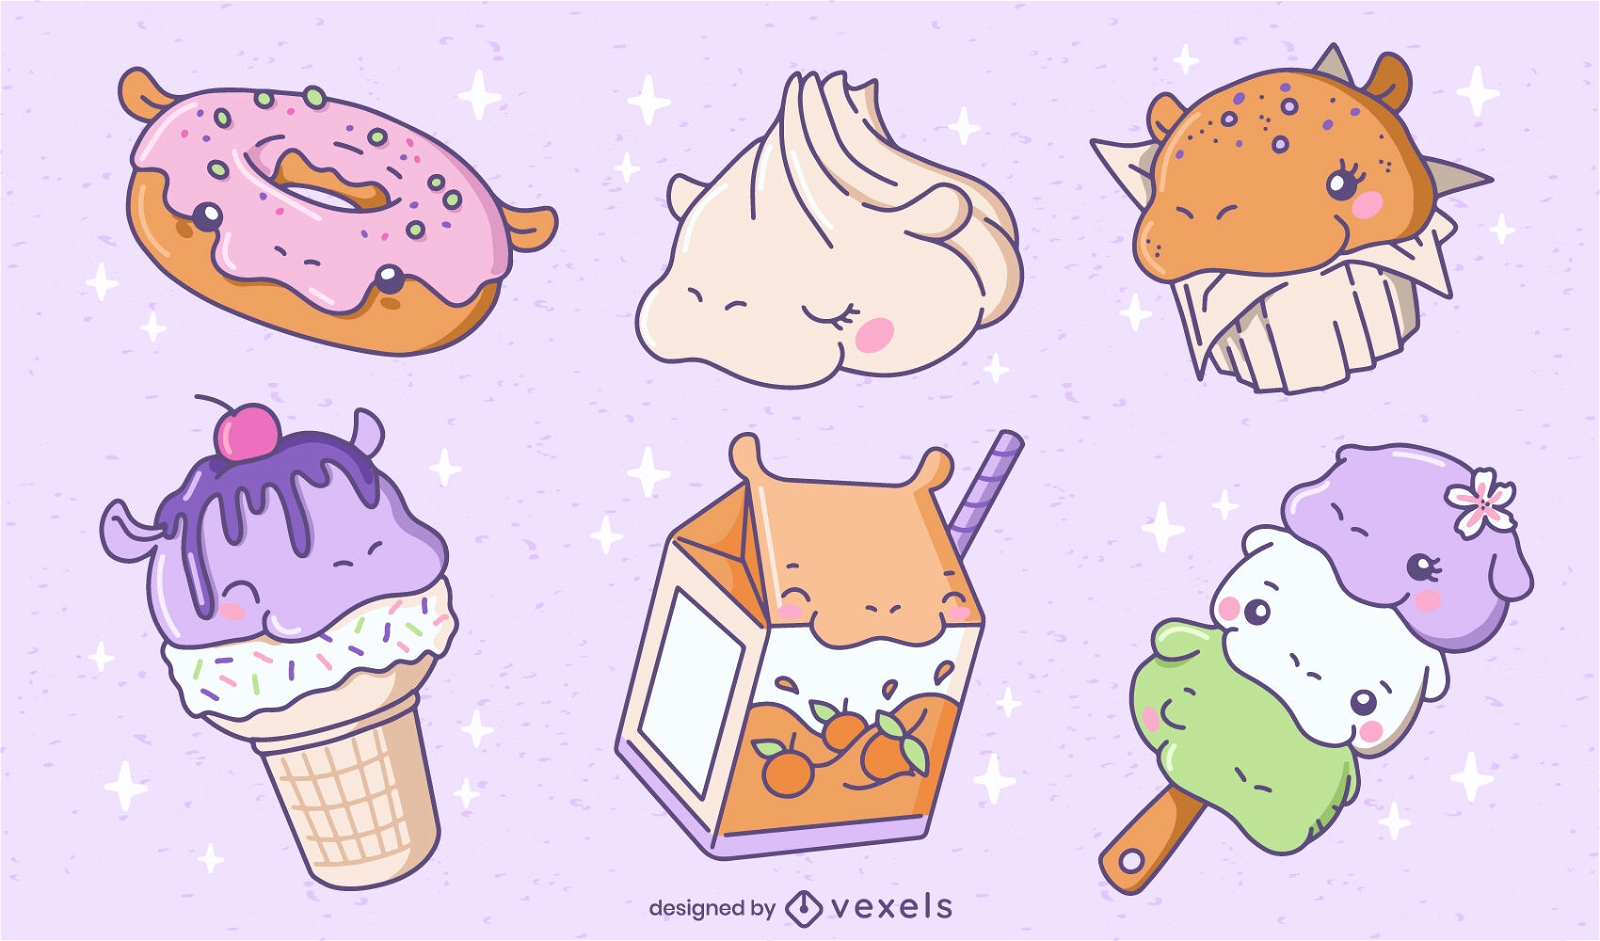 Cute Characters: Kawaii Food - Super Cute Kawaii!!